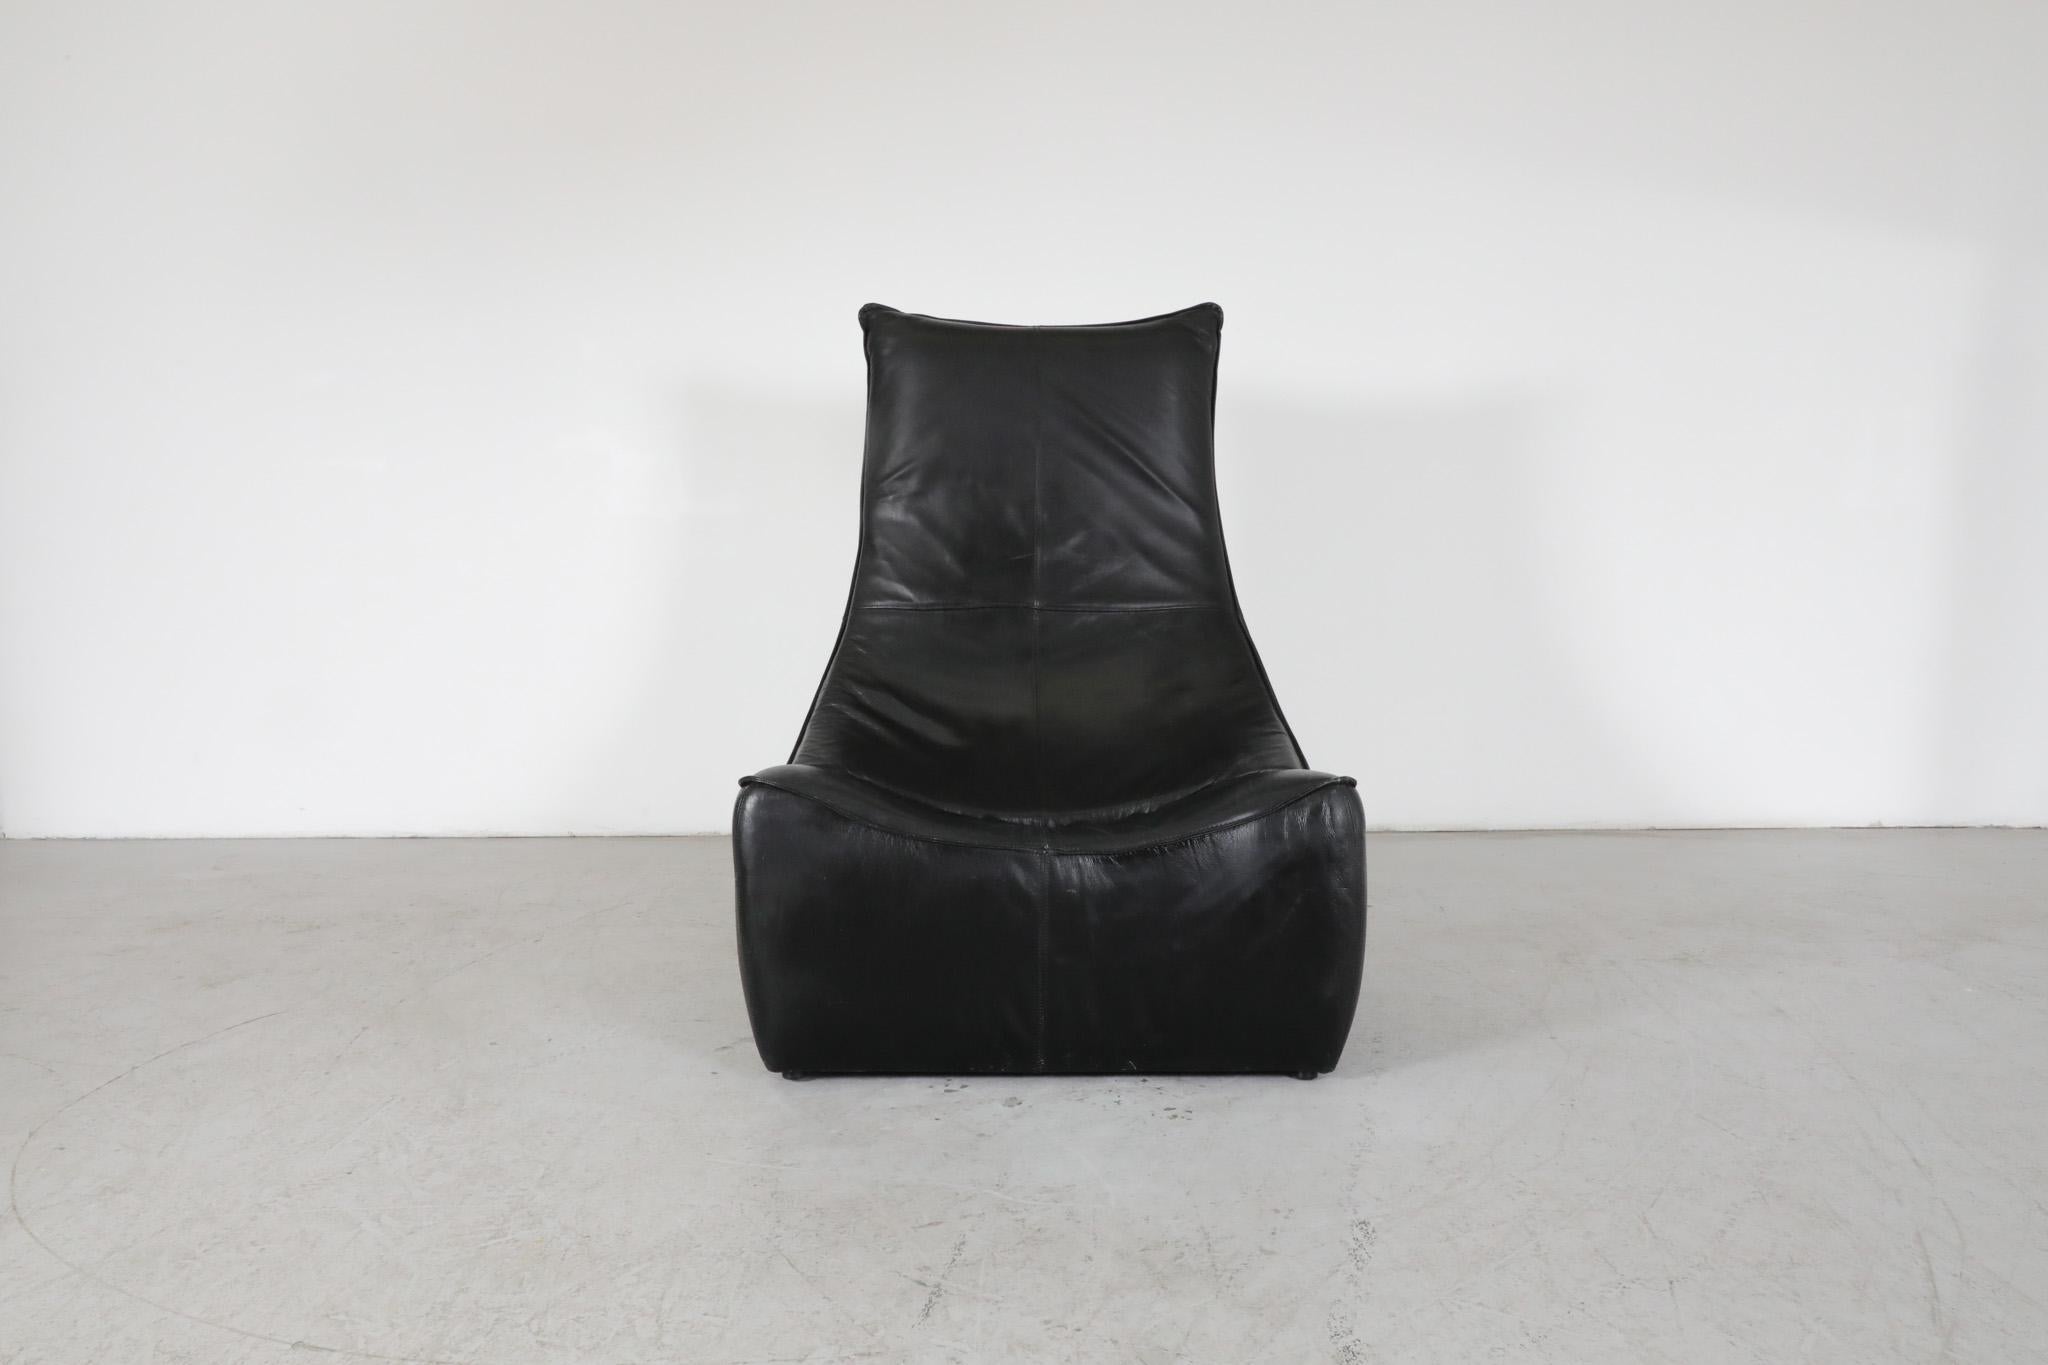 Mid-Century 'Rock' Loungesessel aus schwarzem Leder, entworfen von Gerard van den Berg für Montis. Ikonisches rahmenloses Design mit weichen Kurven und hoher Rückenlehne. Elegante Einzelsesselversion des Liegesessels 